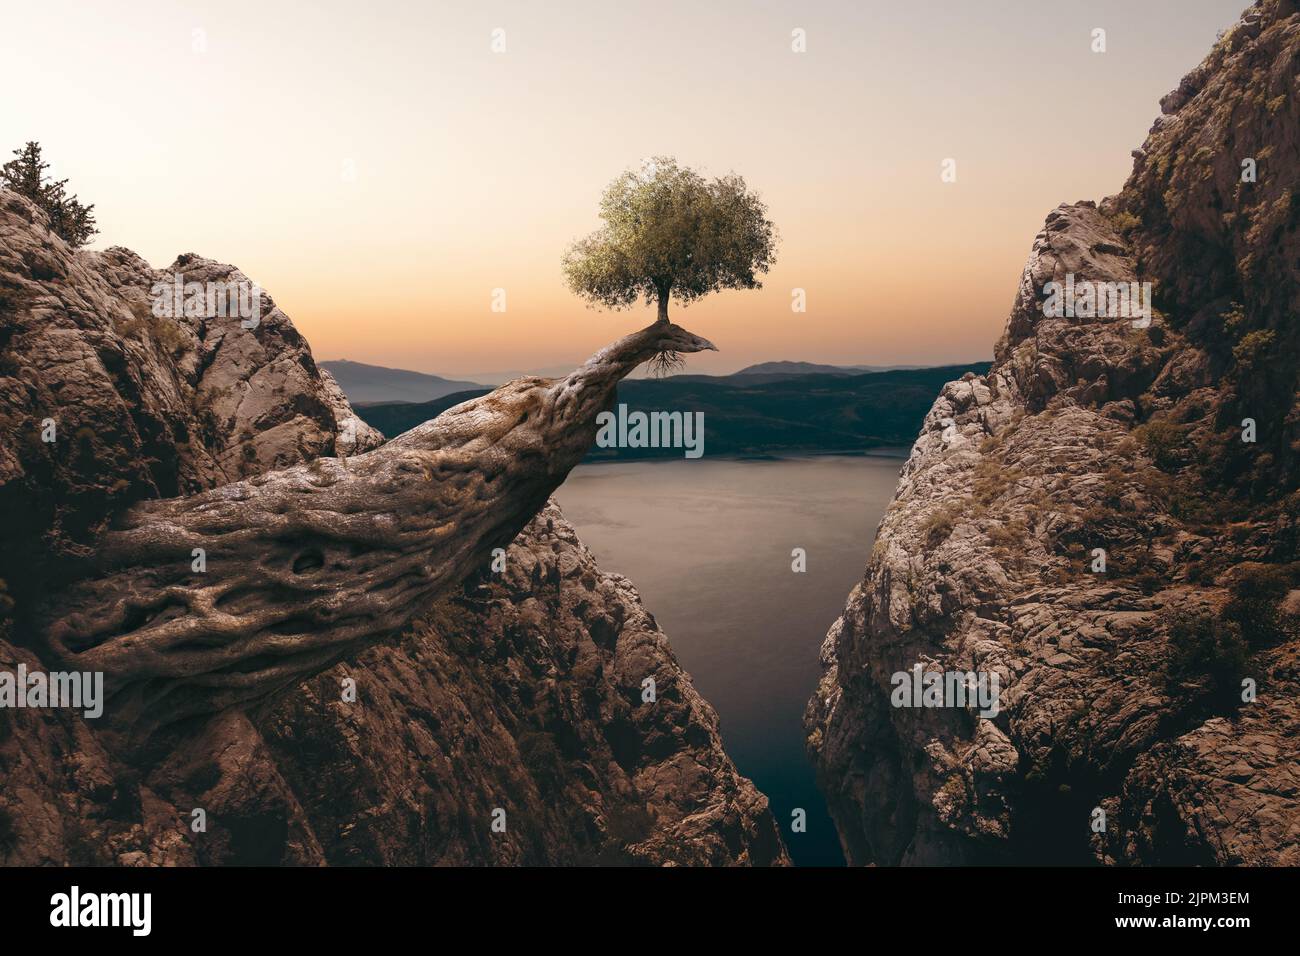 Ein kleiner Baum wächst auf einem riesigen Baumstamm zwischen den Bergen. Unrealistische Fantasie und Wunder des Naturbegriffs. Stockfoto